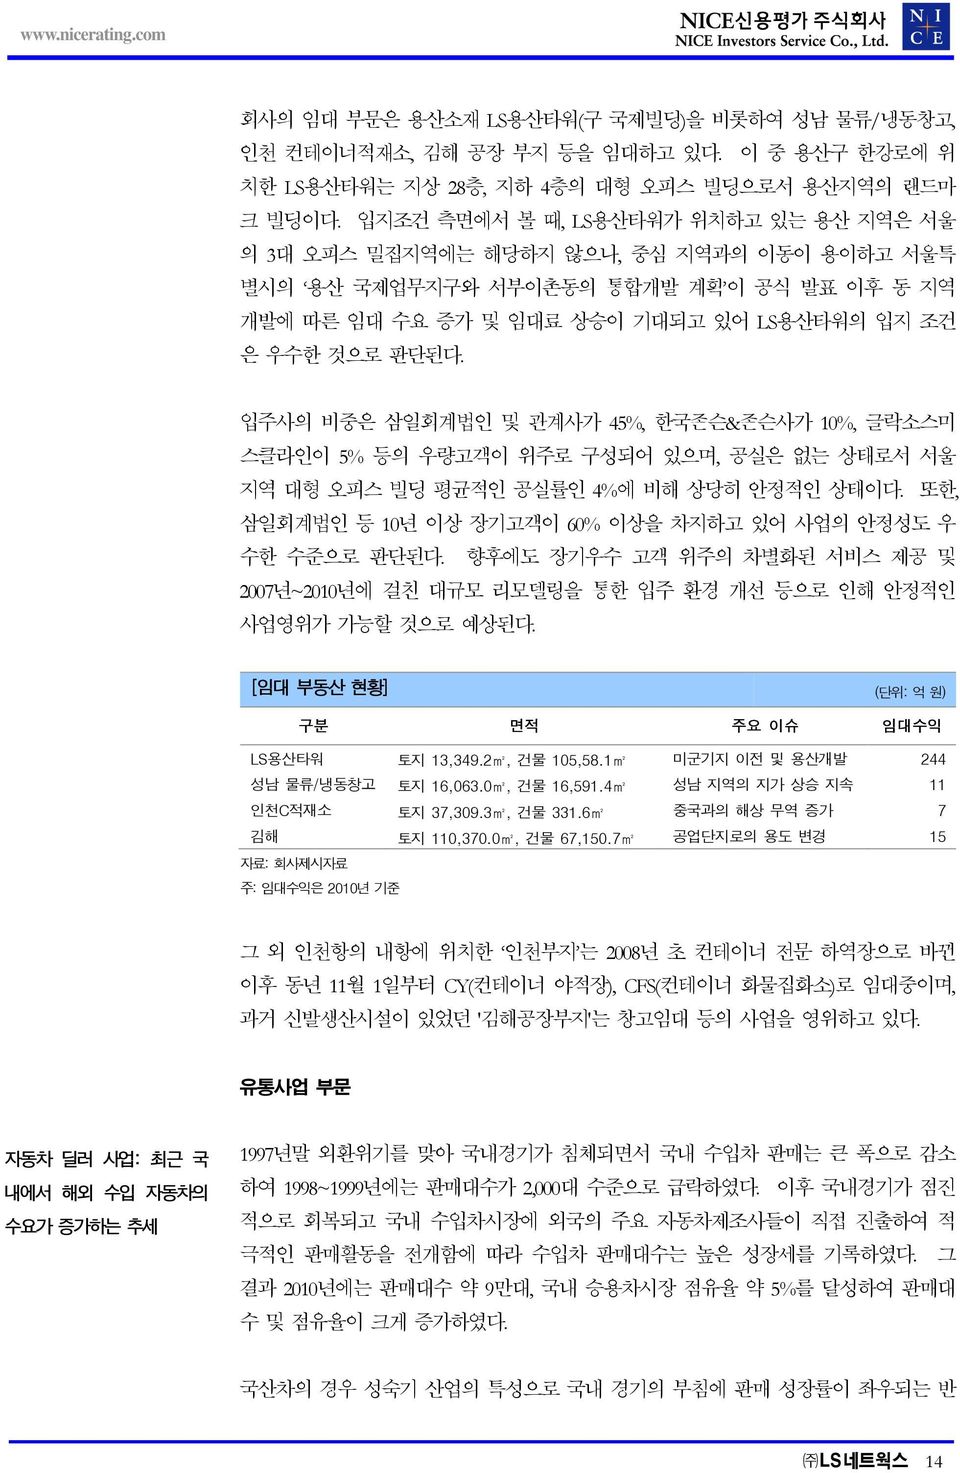 입주사의 비중은 삼일회계법인 및 관계사가 45%, 한국존슨&존슨사가 10%, 글락소스미 스클라인이 5% 등의 우량고객이 위주로 구성되어 있으며, 공실은 없는 상태로서 서울 지역 대형 오피스 빌딩 평균적인 공실률인 4%에 비해 상당히 안정적인 상태이다.